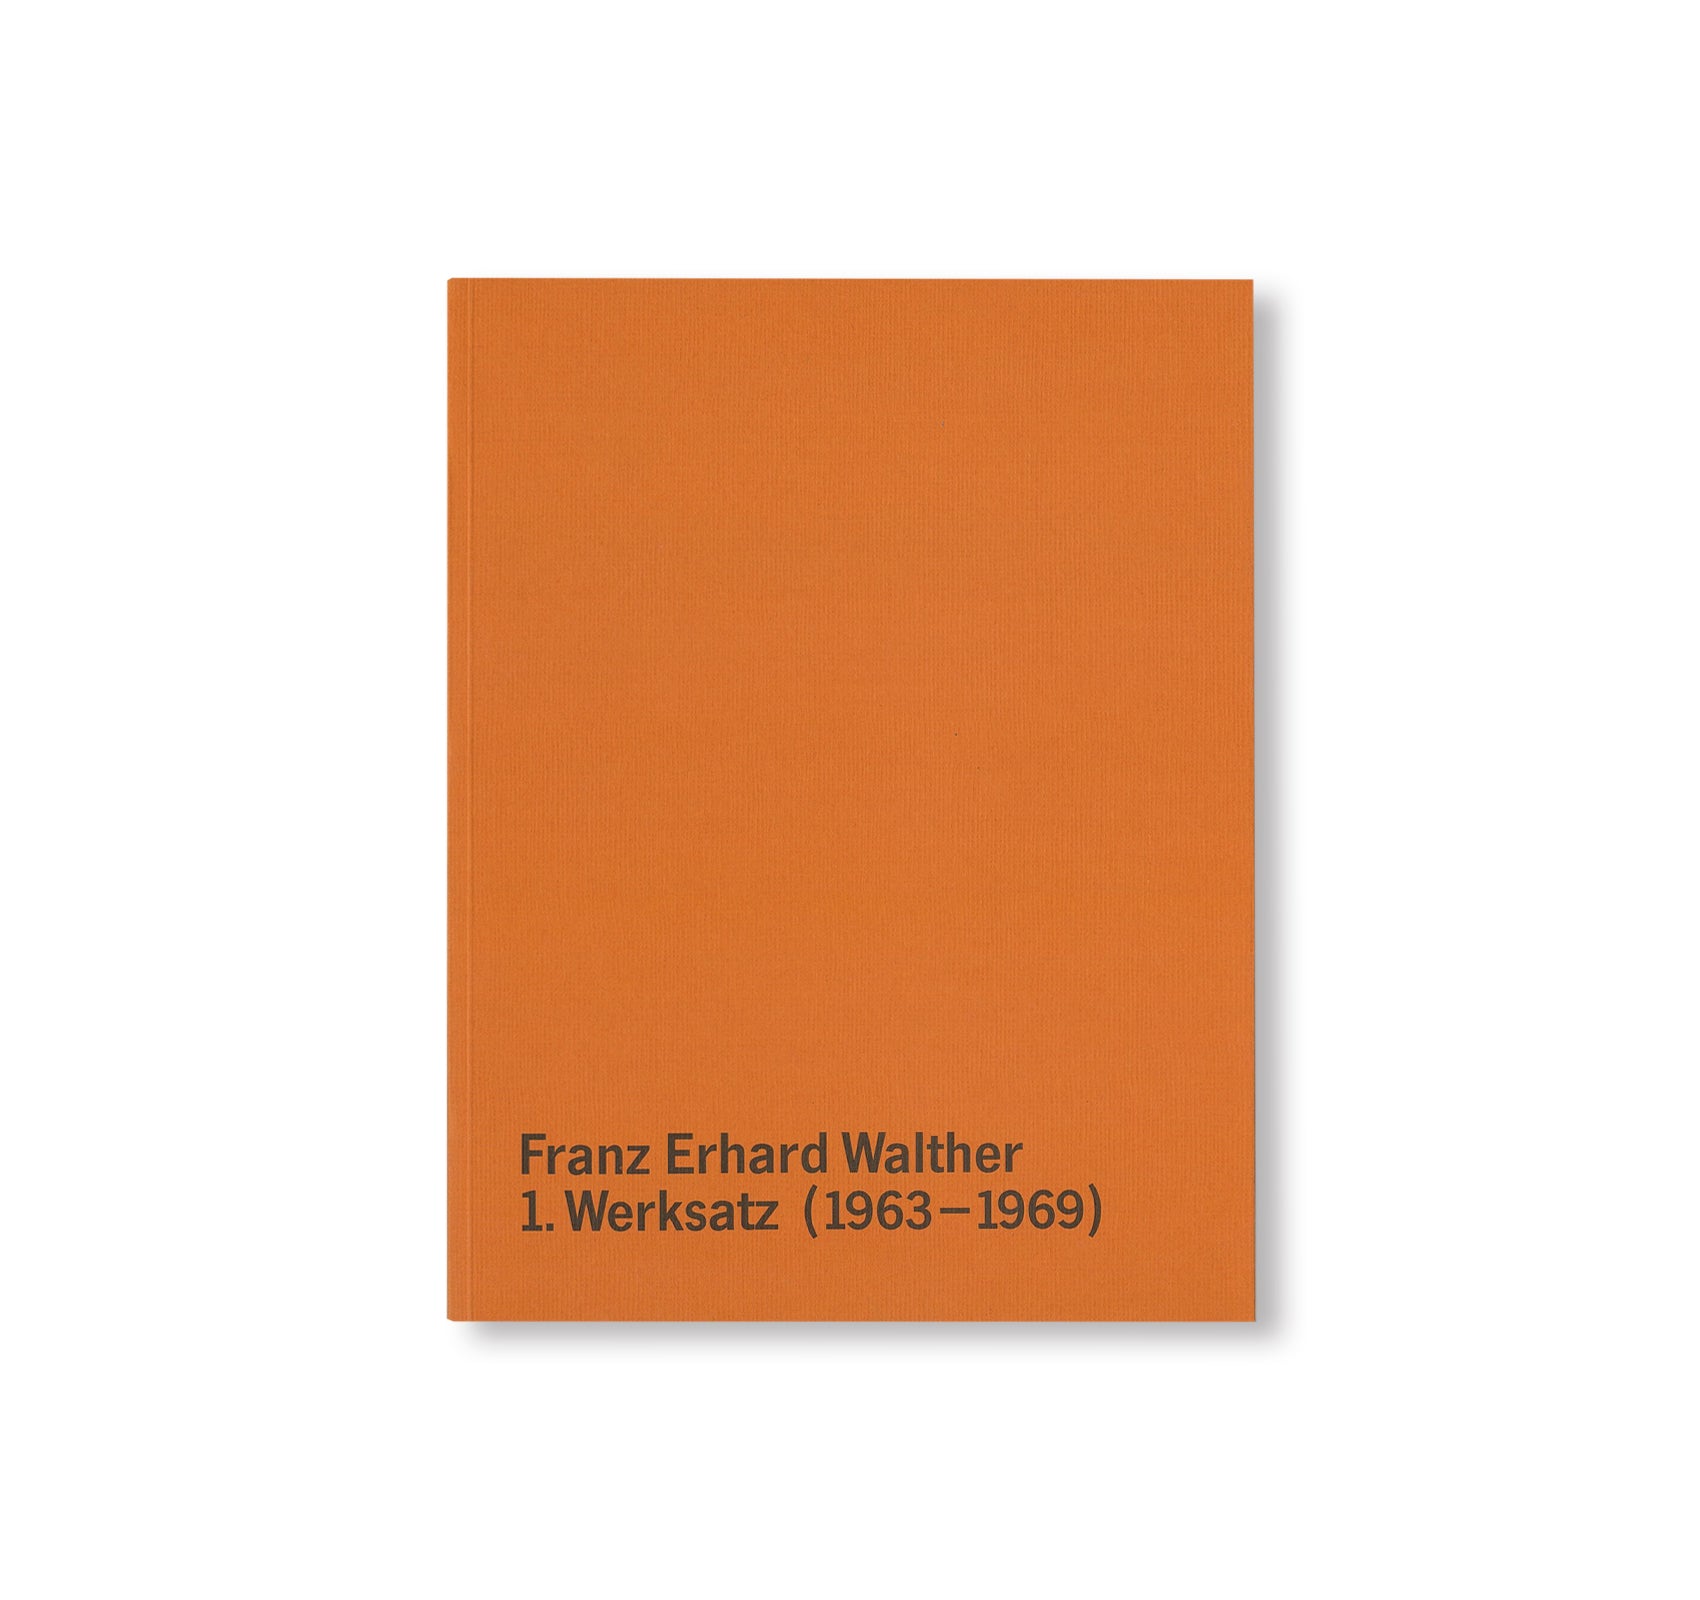 FRANZ ERHARD WALTHER – DER 1. WERKSATZ (1963-1969) by Franz Erhard Walther